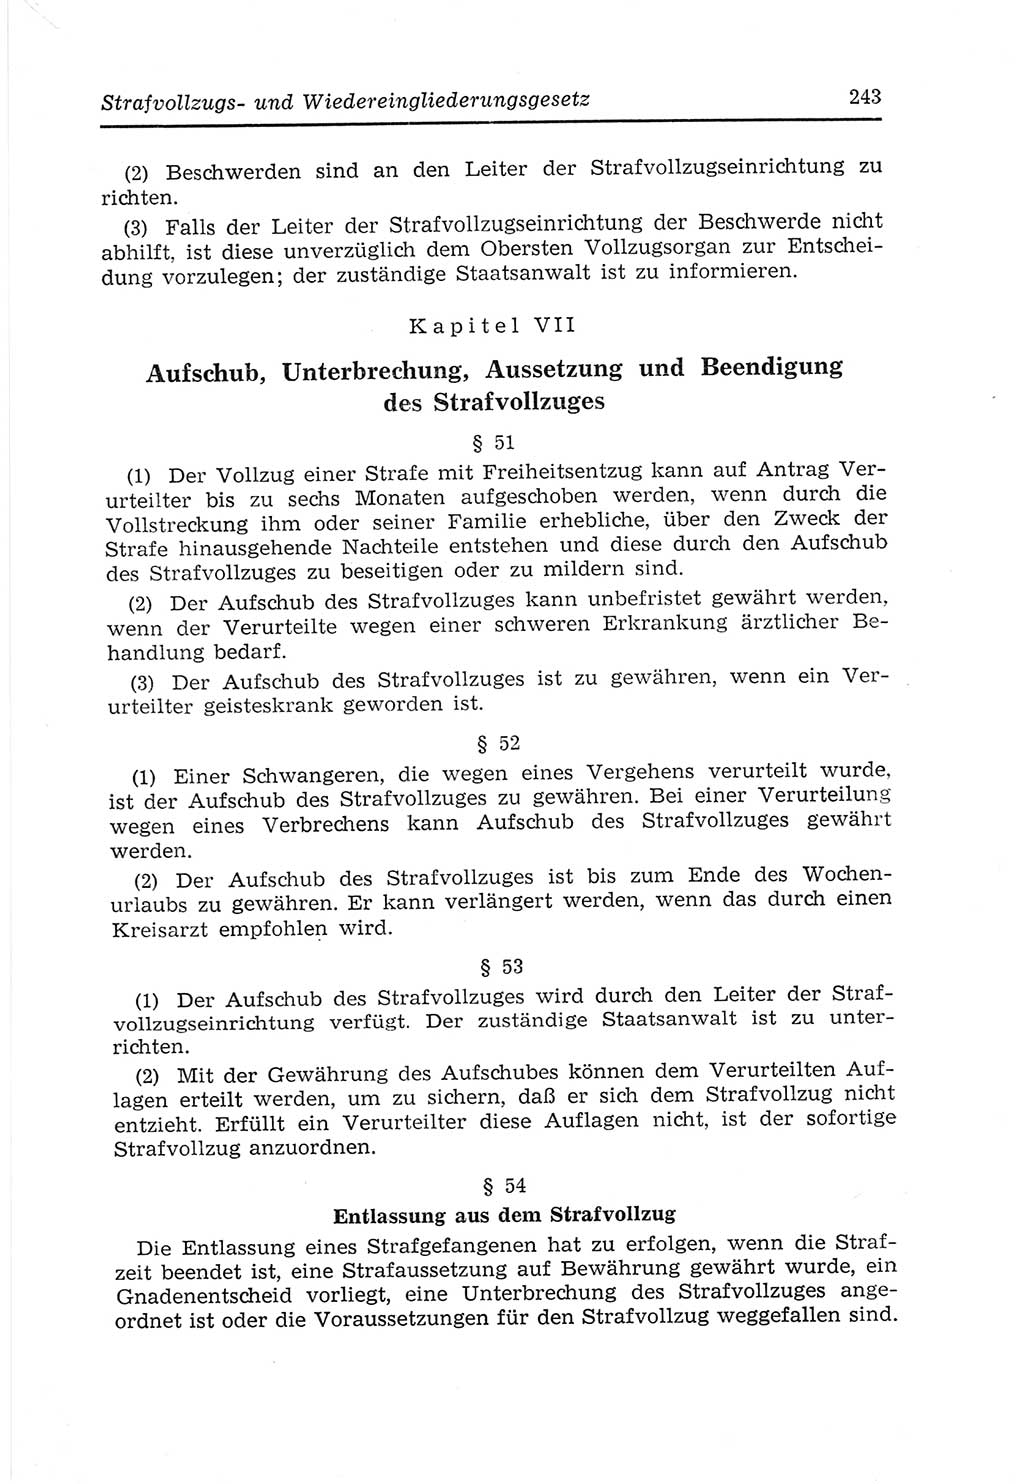 Strafvollzugs- und Wiedereingliederungsgesetz (SVWG) der Deutschen Demokratischen Republik (DDR) 1968, Seite 243 (SVWG DDR 1968, S. 243)